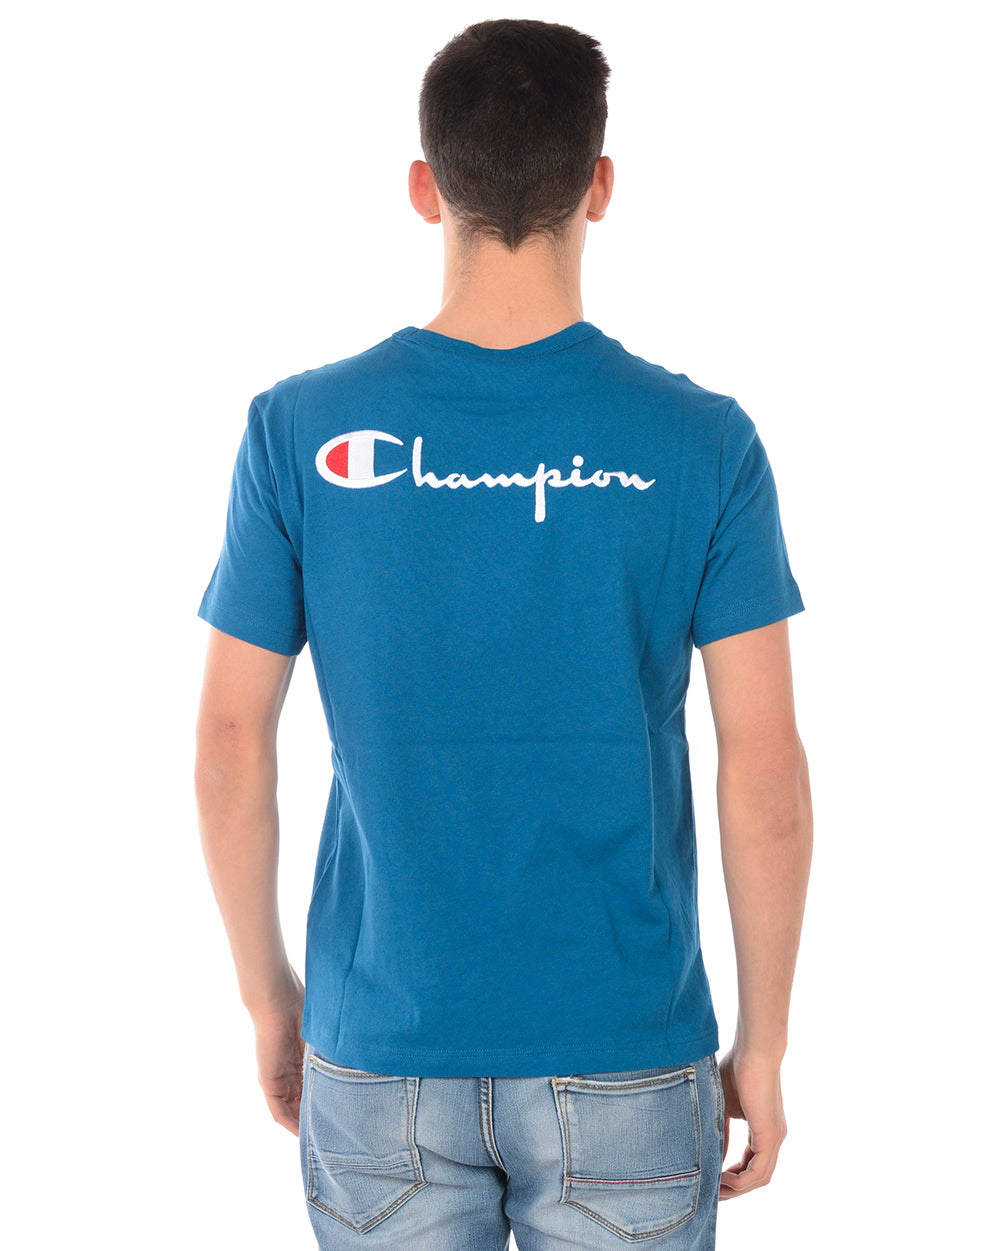 Maglietta Champion M Celeste con Logo Ricamato